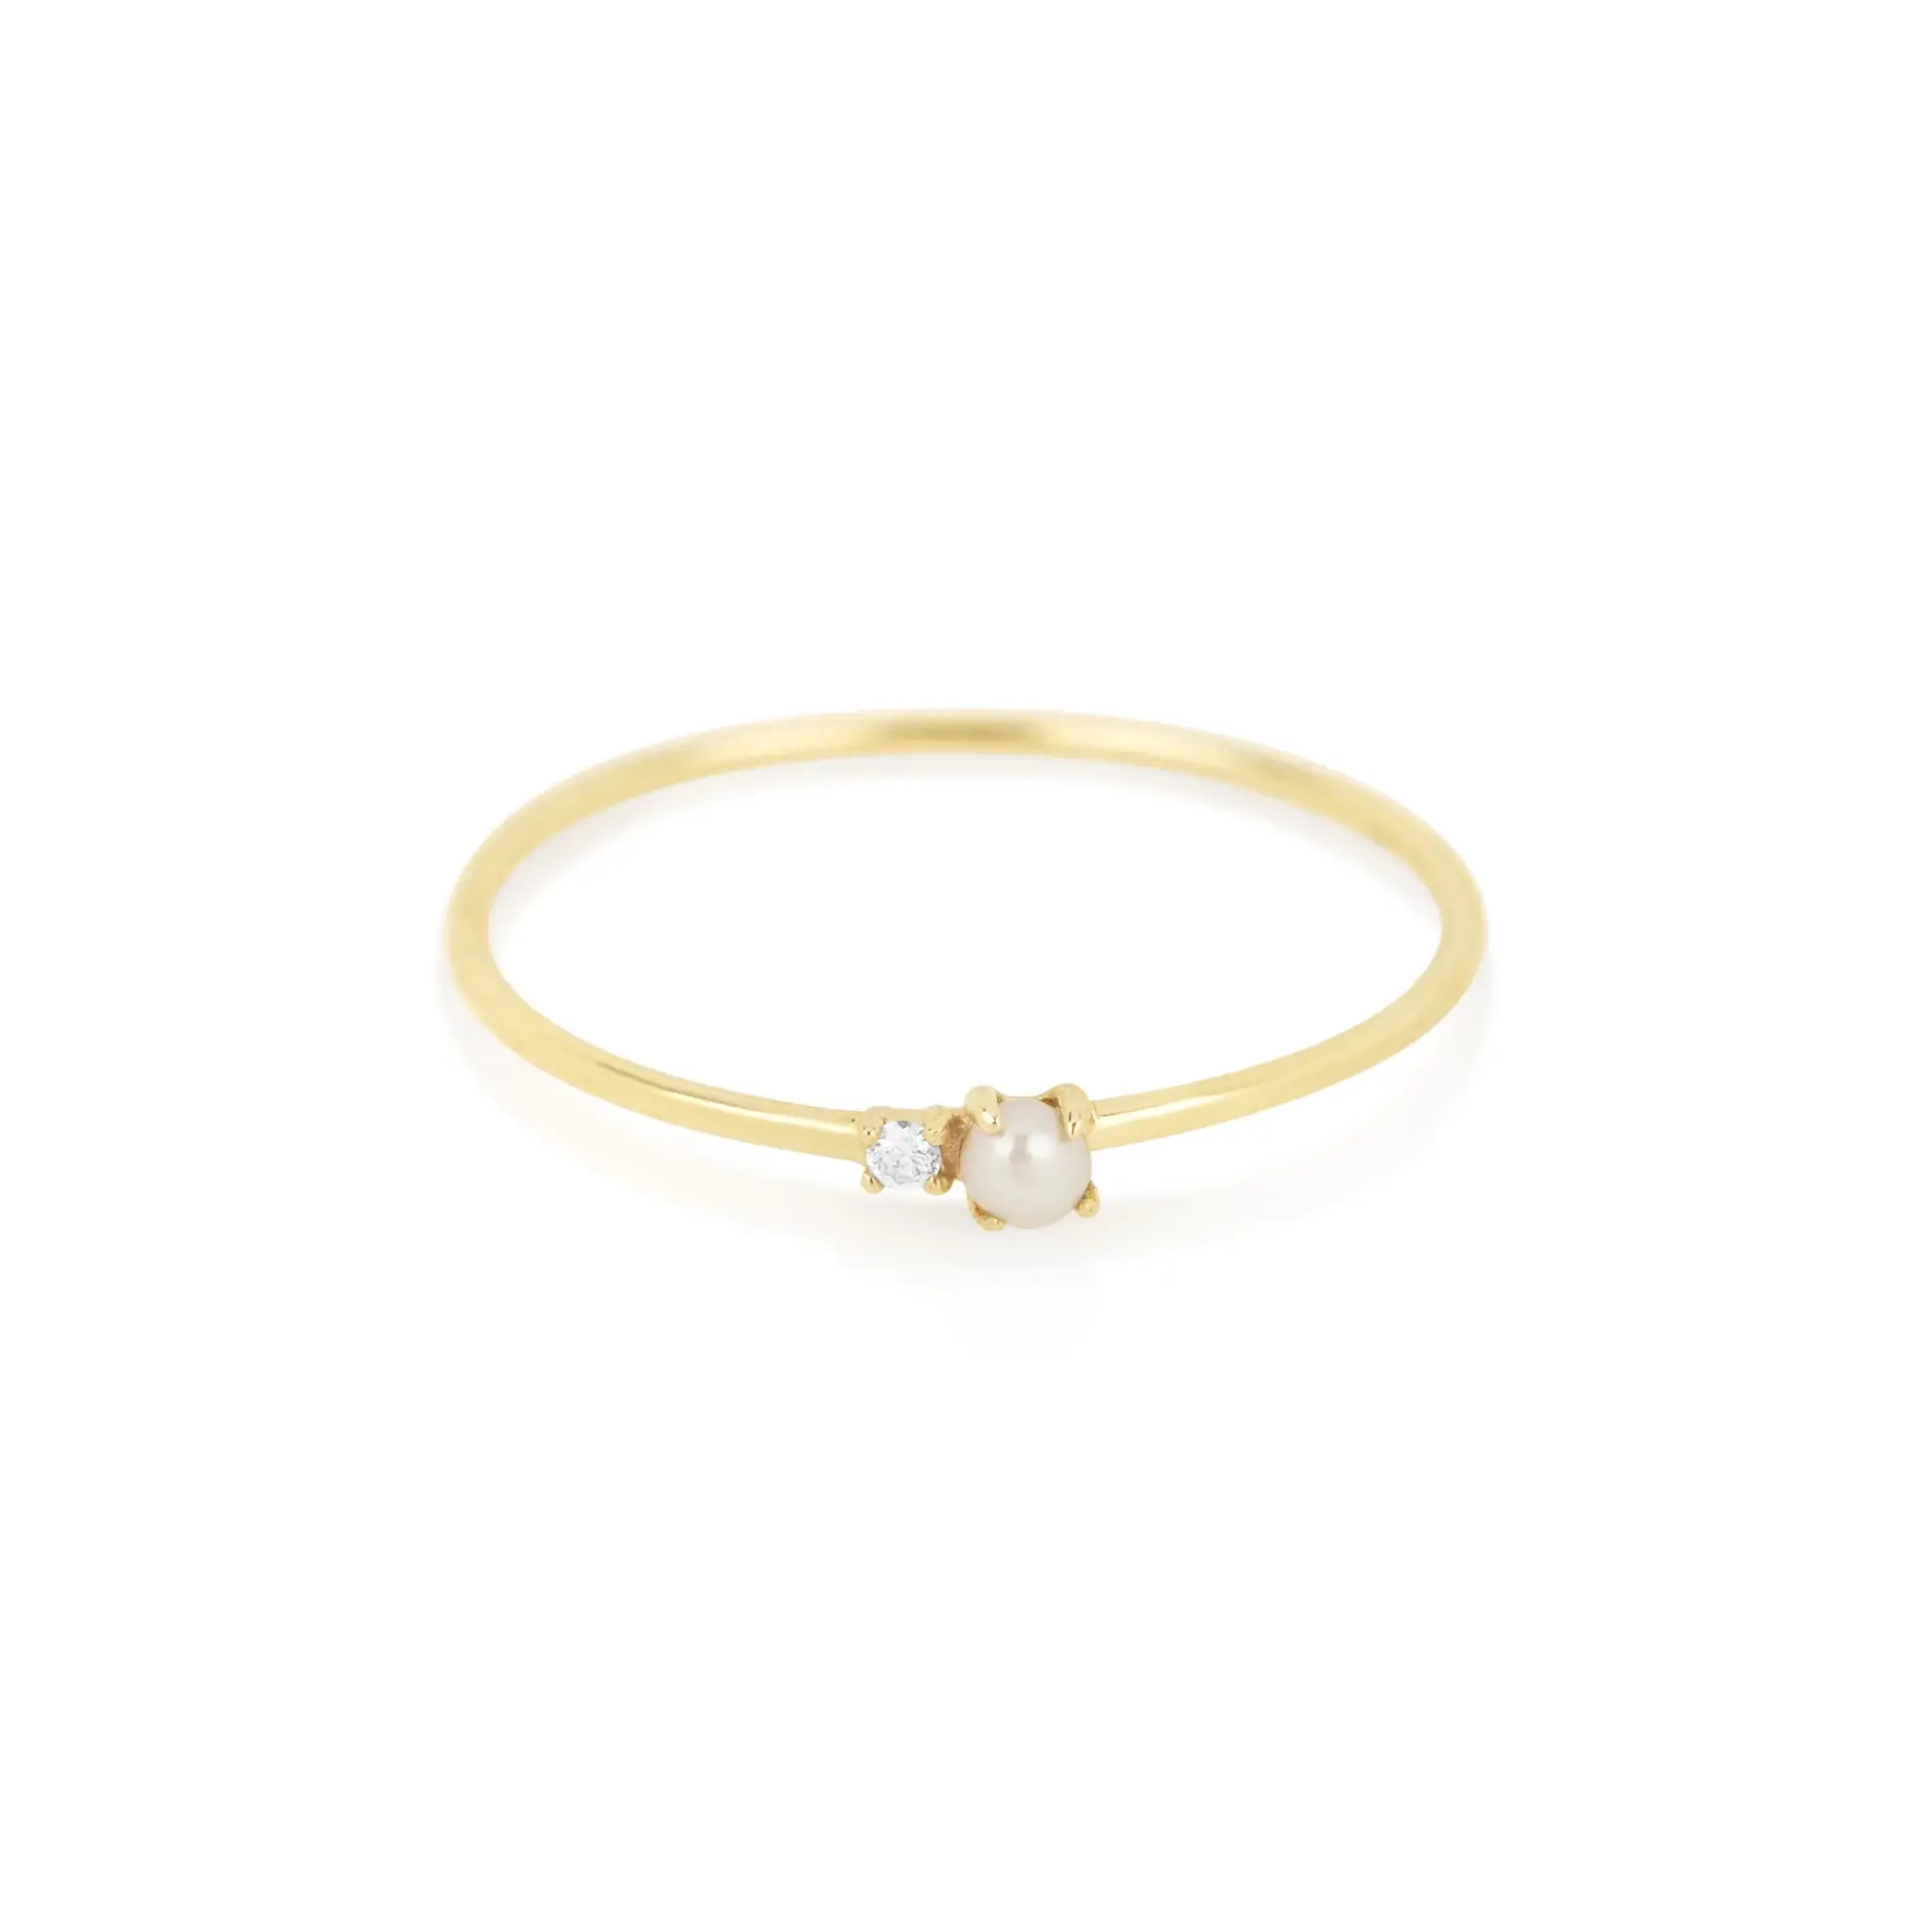 Oro Vermeil de la plata esterlina 925 simple mínimo de joyería fina banda cz perla de piedra anillo de plata para mujer chica 3